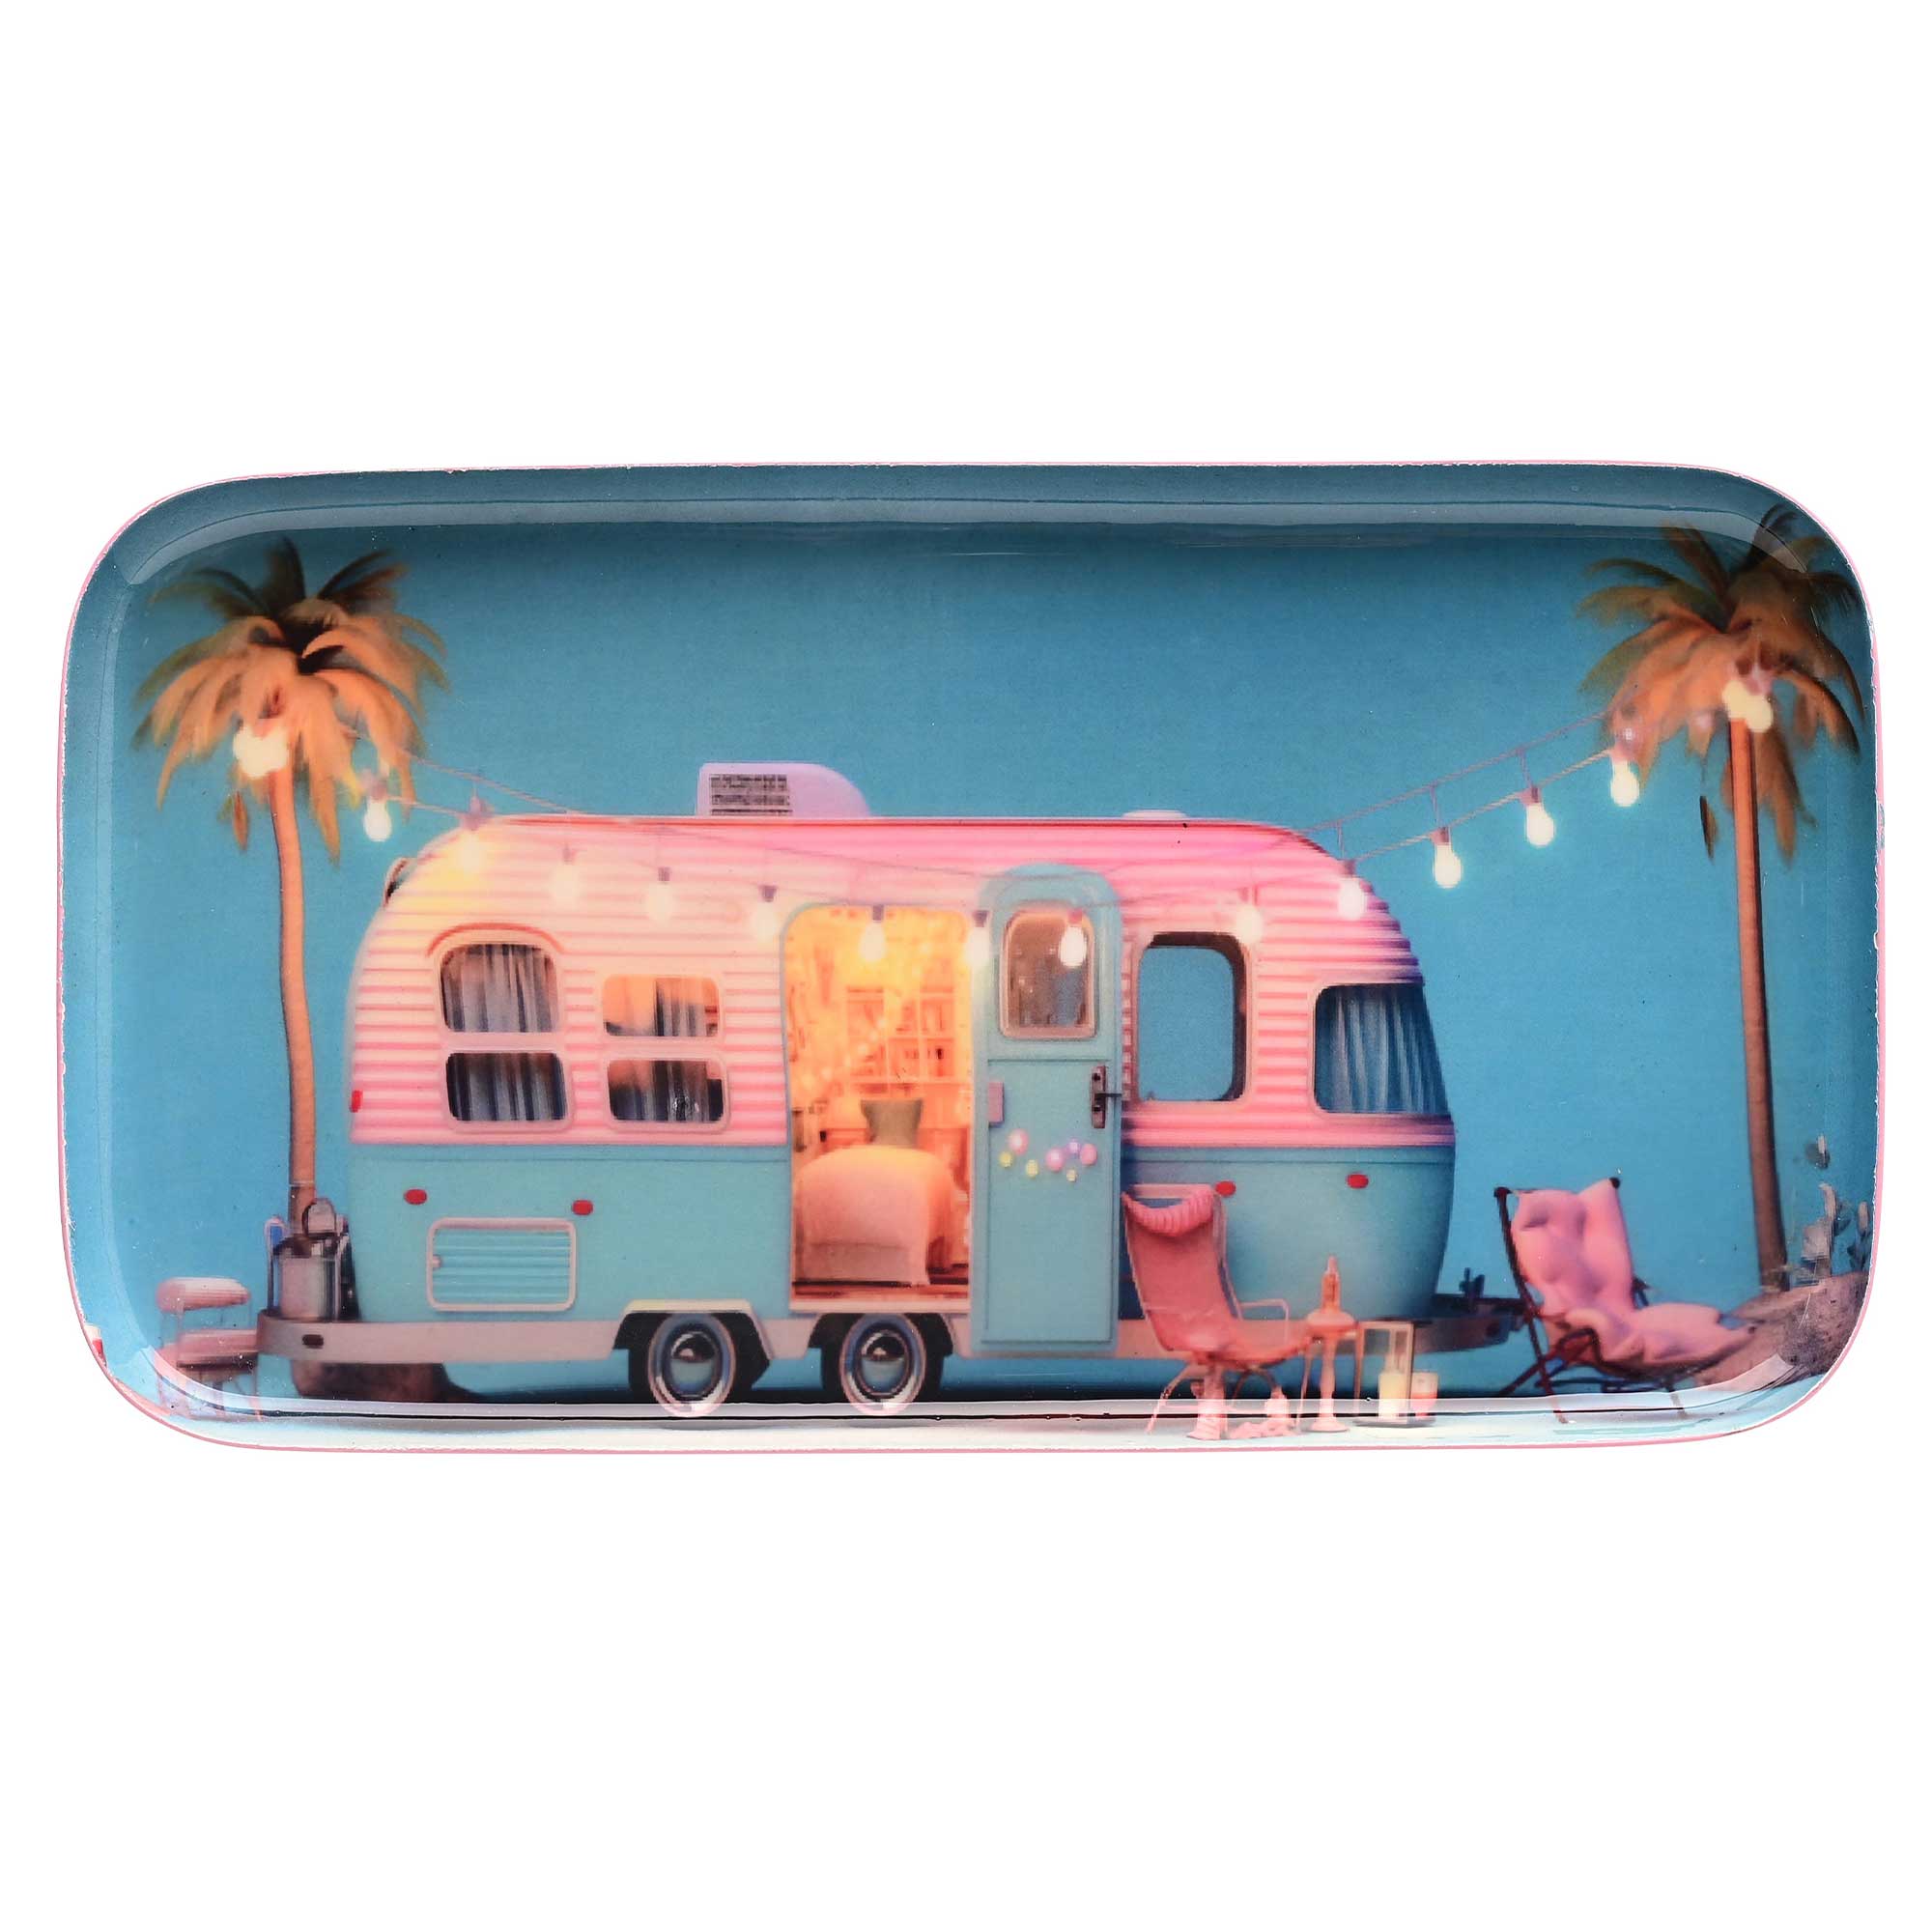 Deko-Tablett "Wohnwagen" in Rosa blau ein Wohnwagen zwischen Palme mit Lichterkette